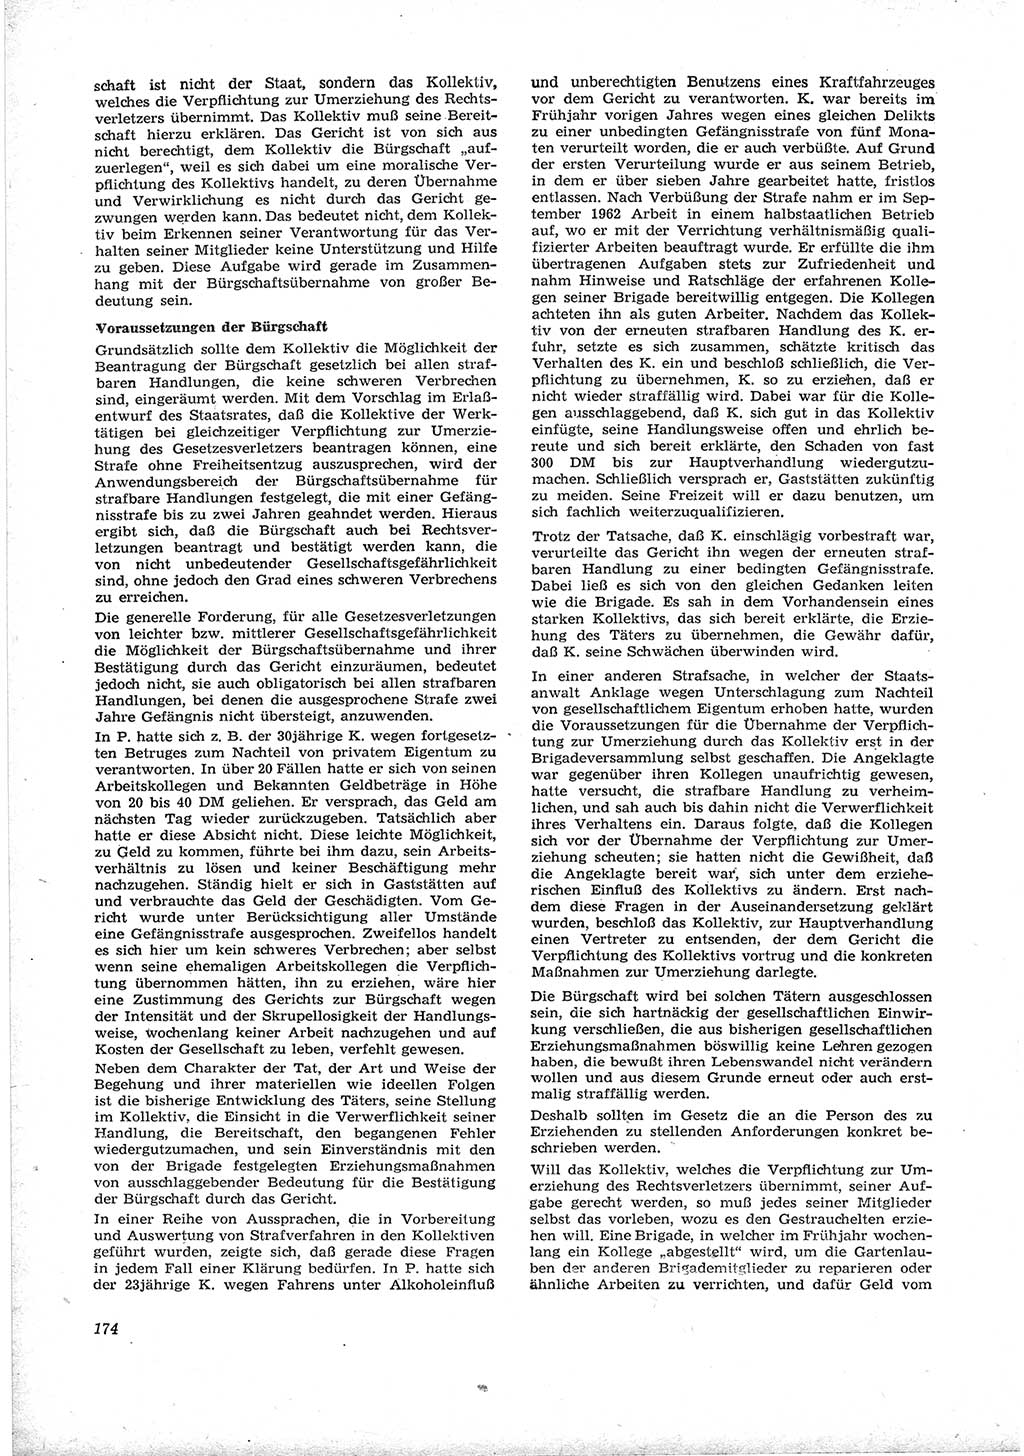 Neue Justiz (NJ), Zeitschrift für Recht und Rechtswissenschaft [Deutsche Demokratische Republik (DDR)], 17. Jahrgang 1963, Seite 174 (NJ DDR 1963, S. 174)